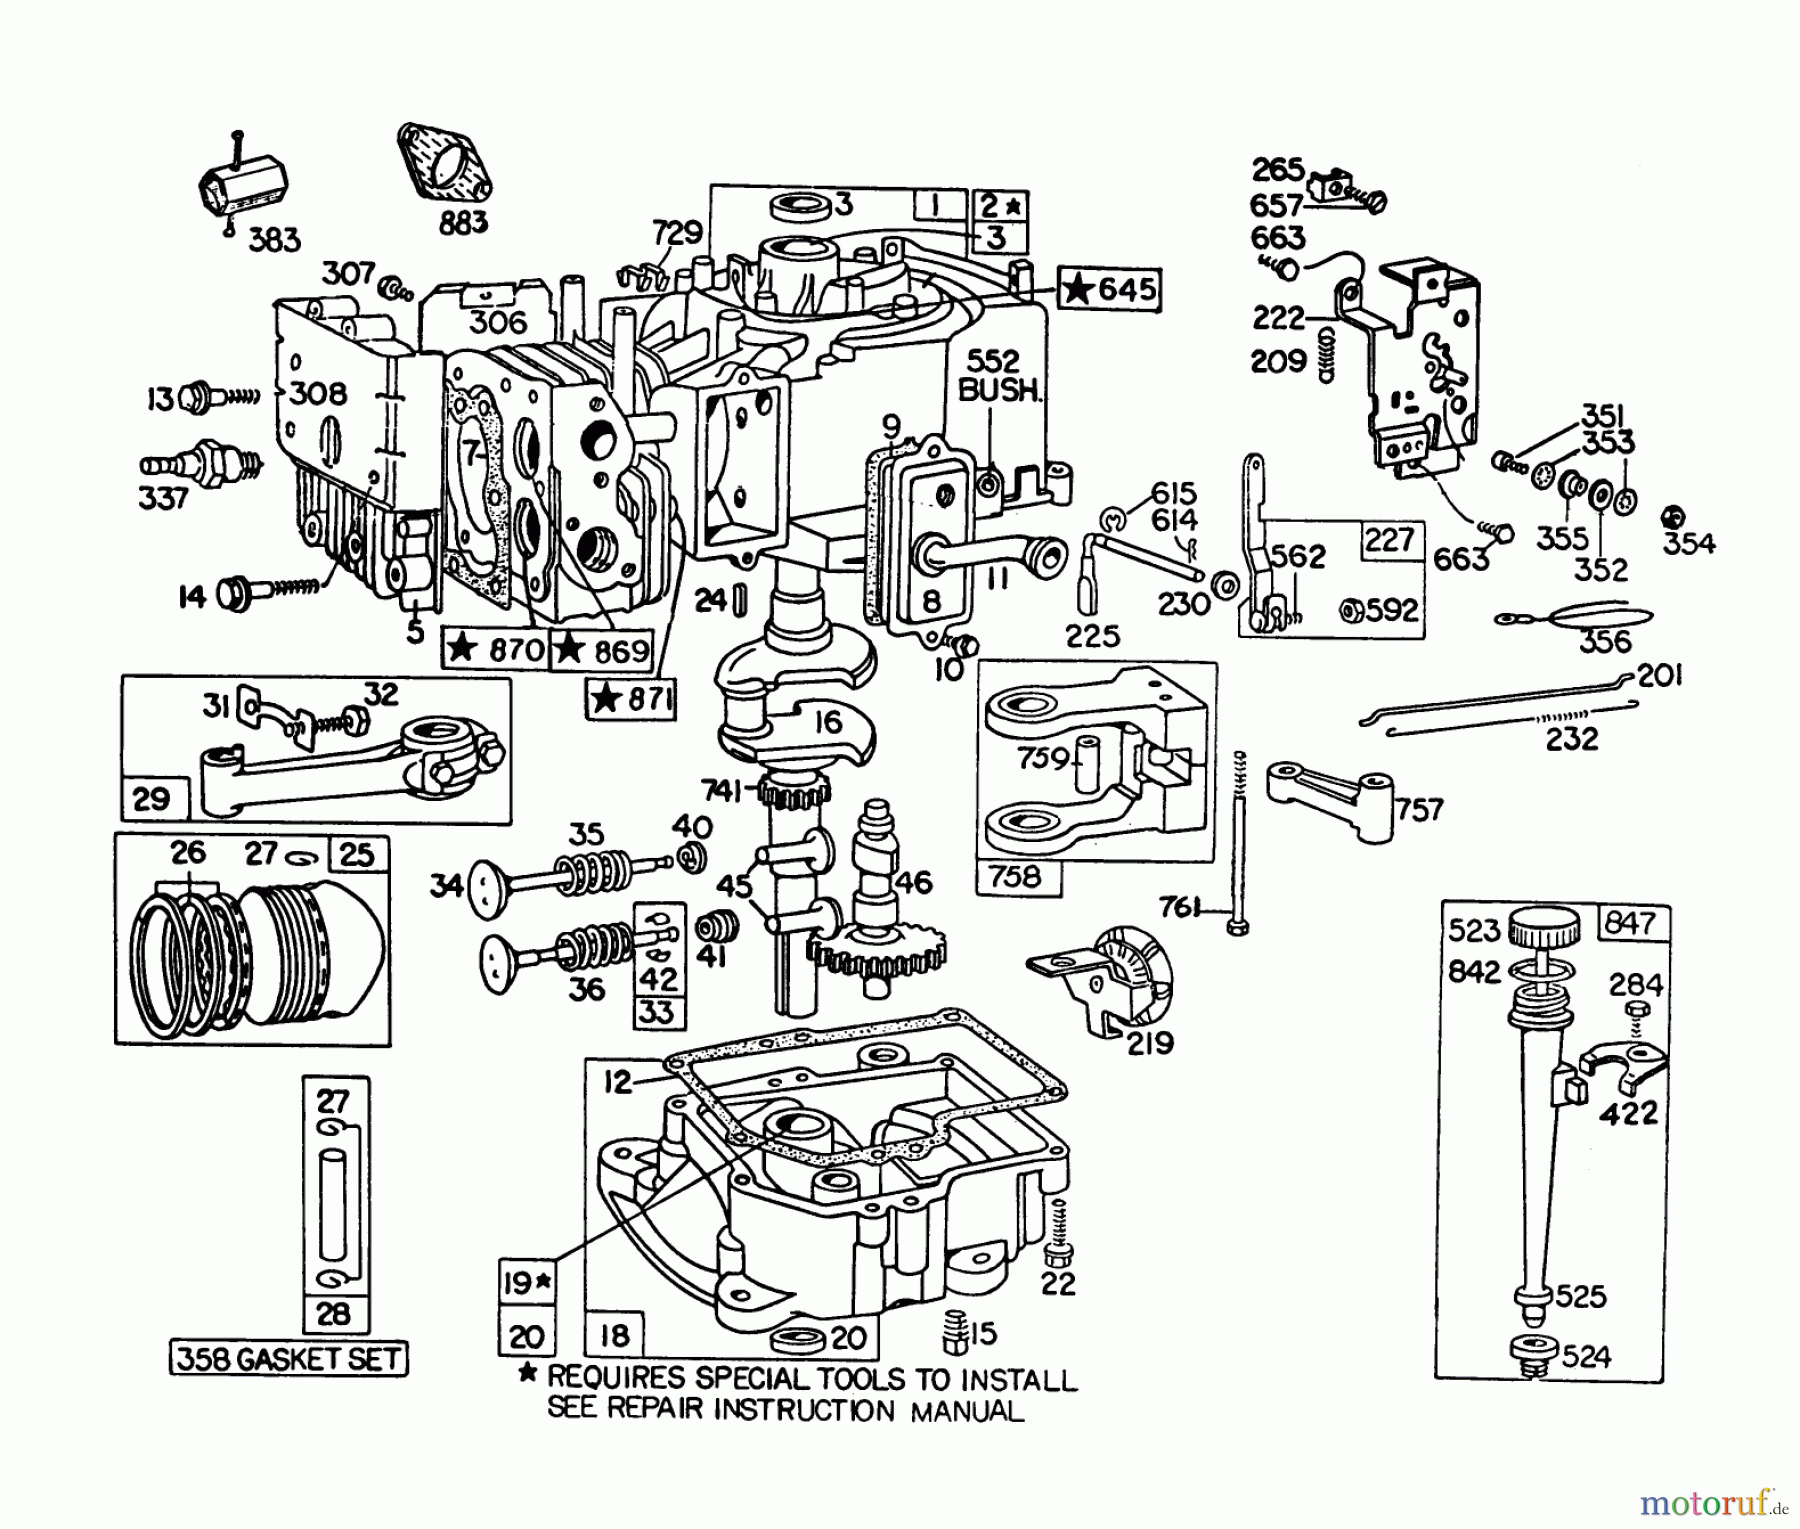  Toro Neu Mowers, Lawn & Garden Tractor Seite 1 57300 (8-32) - Toro 8-32 Front Engine Rider, 1982 (2000001-2999999) ENGINE BRIGGS & STRATTON MODEL 191707-5676-01 (MODEL 57300)